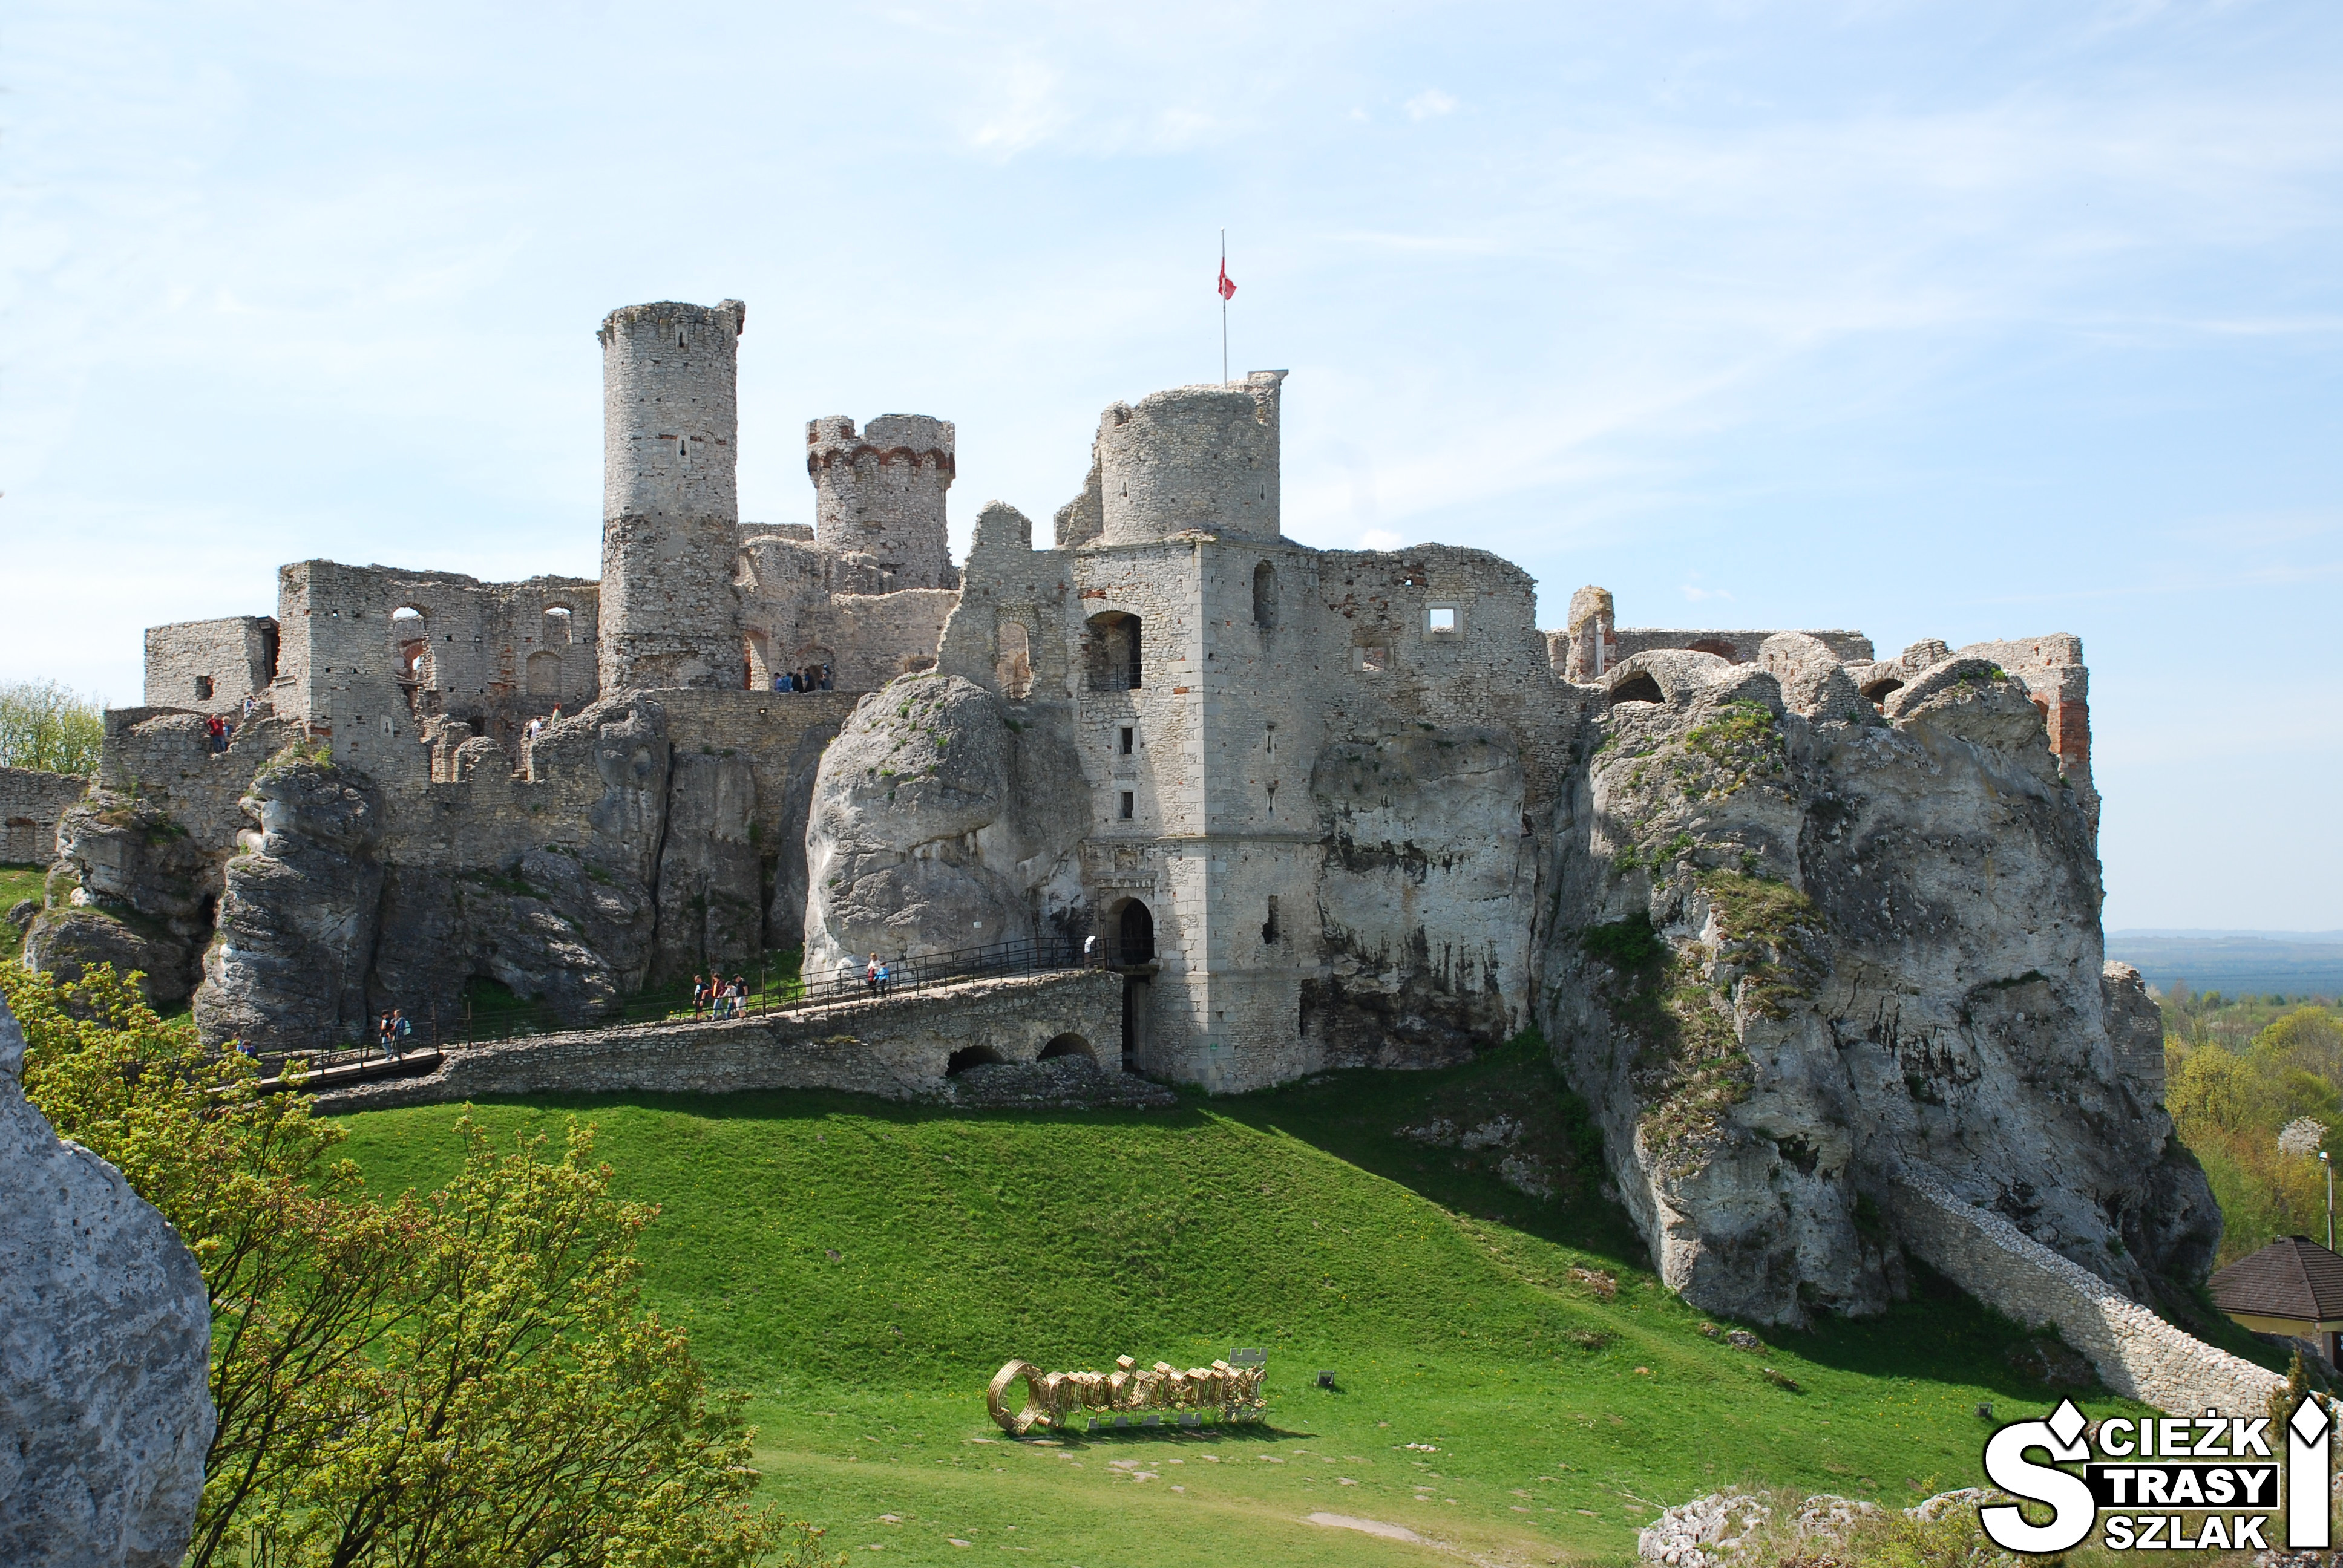 Ruiny zamku wzniesionego na skale wapiennej z dużym złotym napisem Ogrodzieniec na wzgórzu